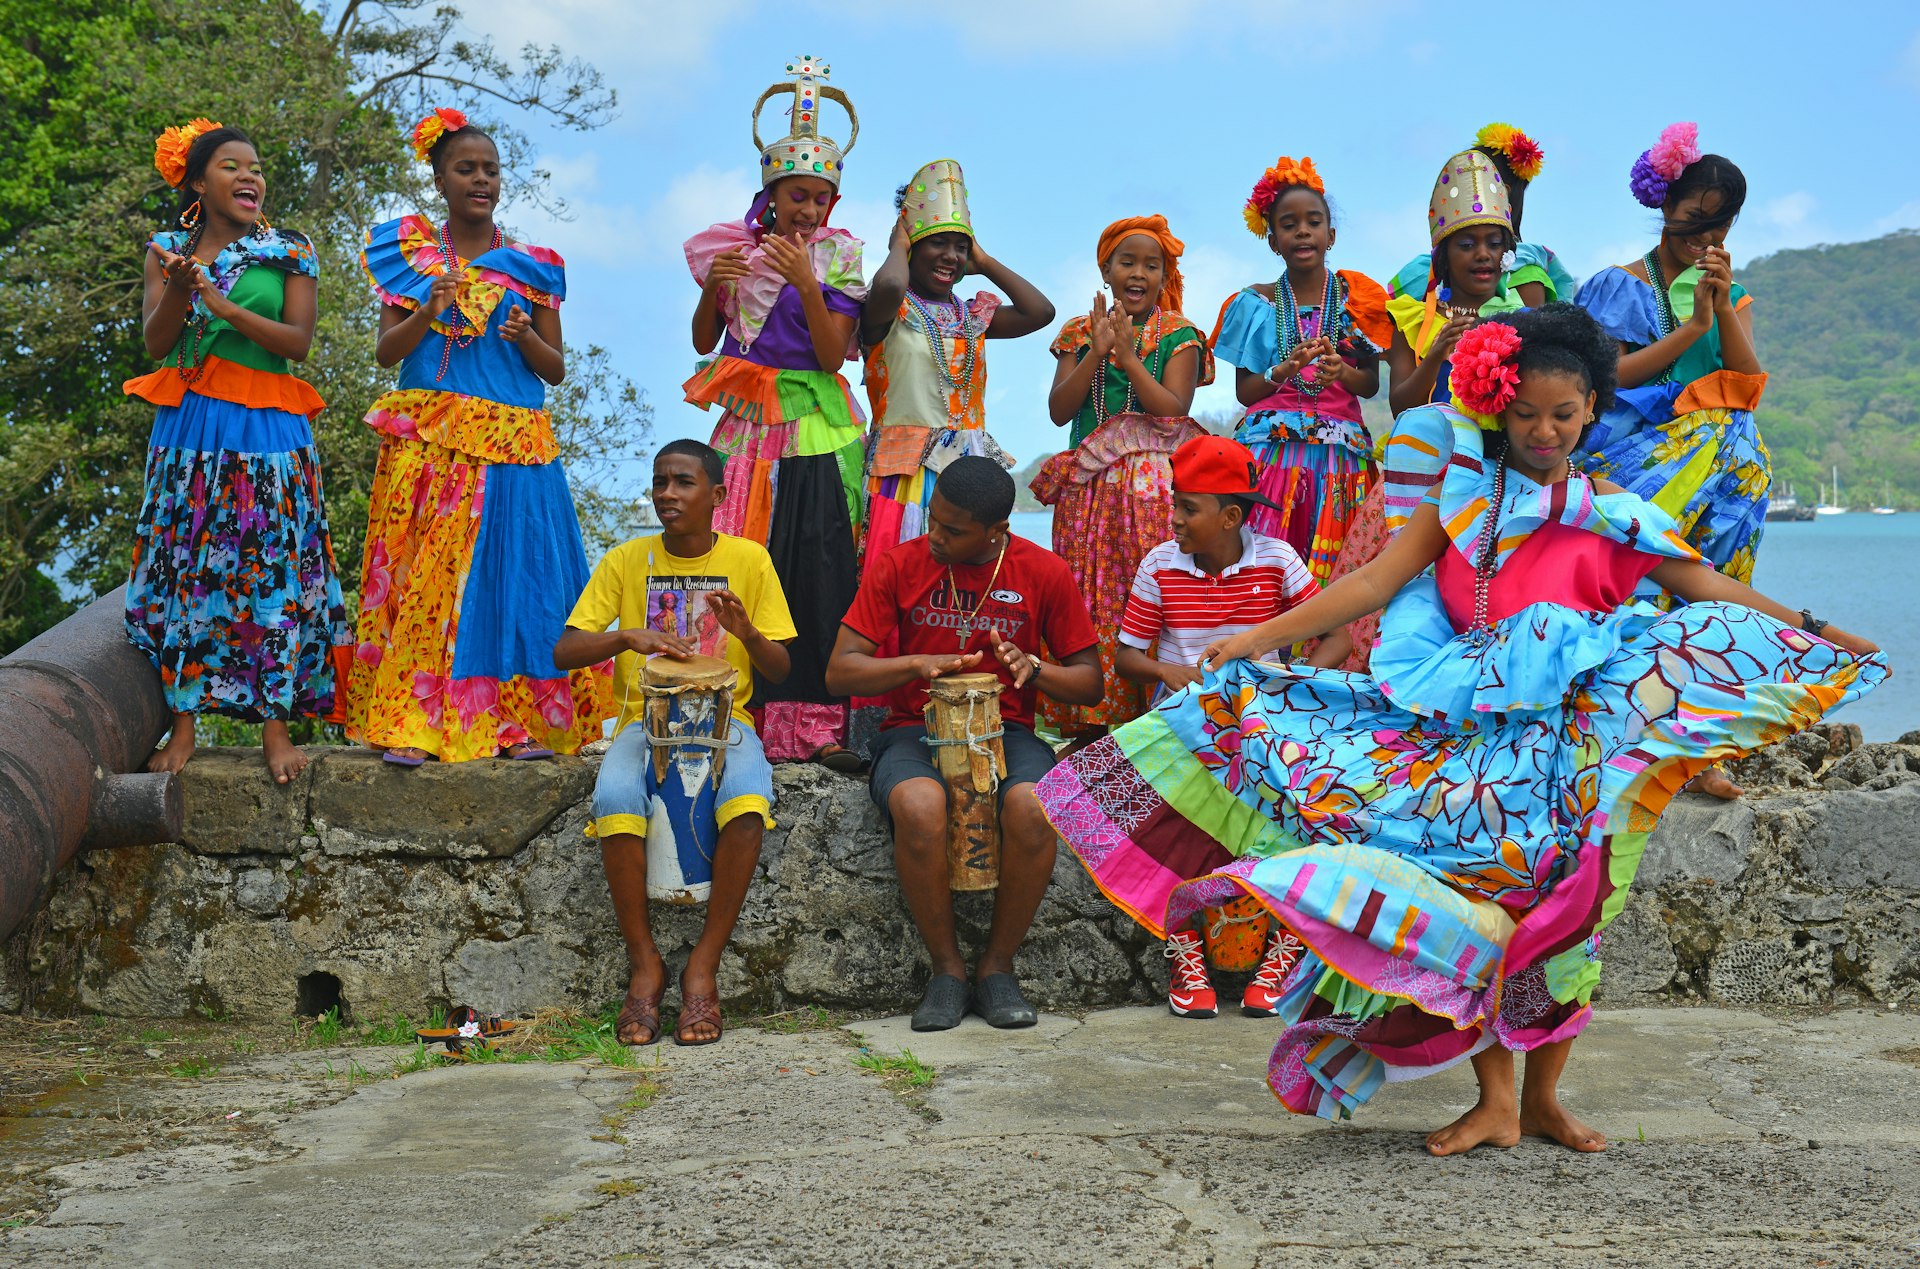 Traditional congo dancers in colorful costumes in Portobello, Panama